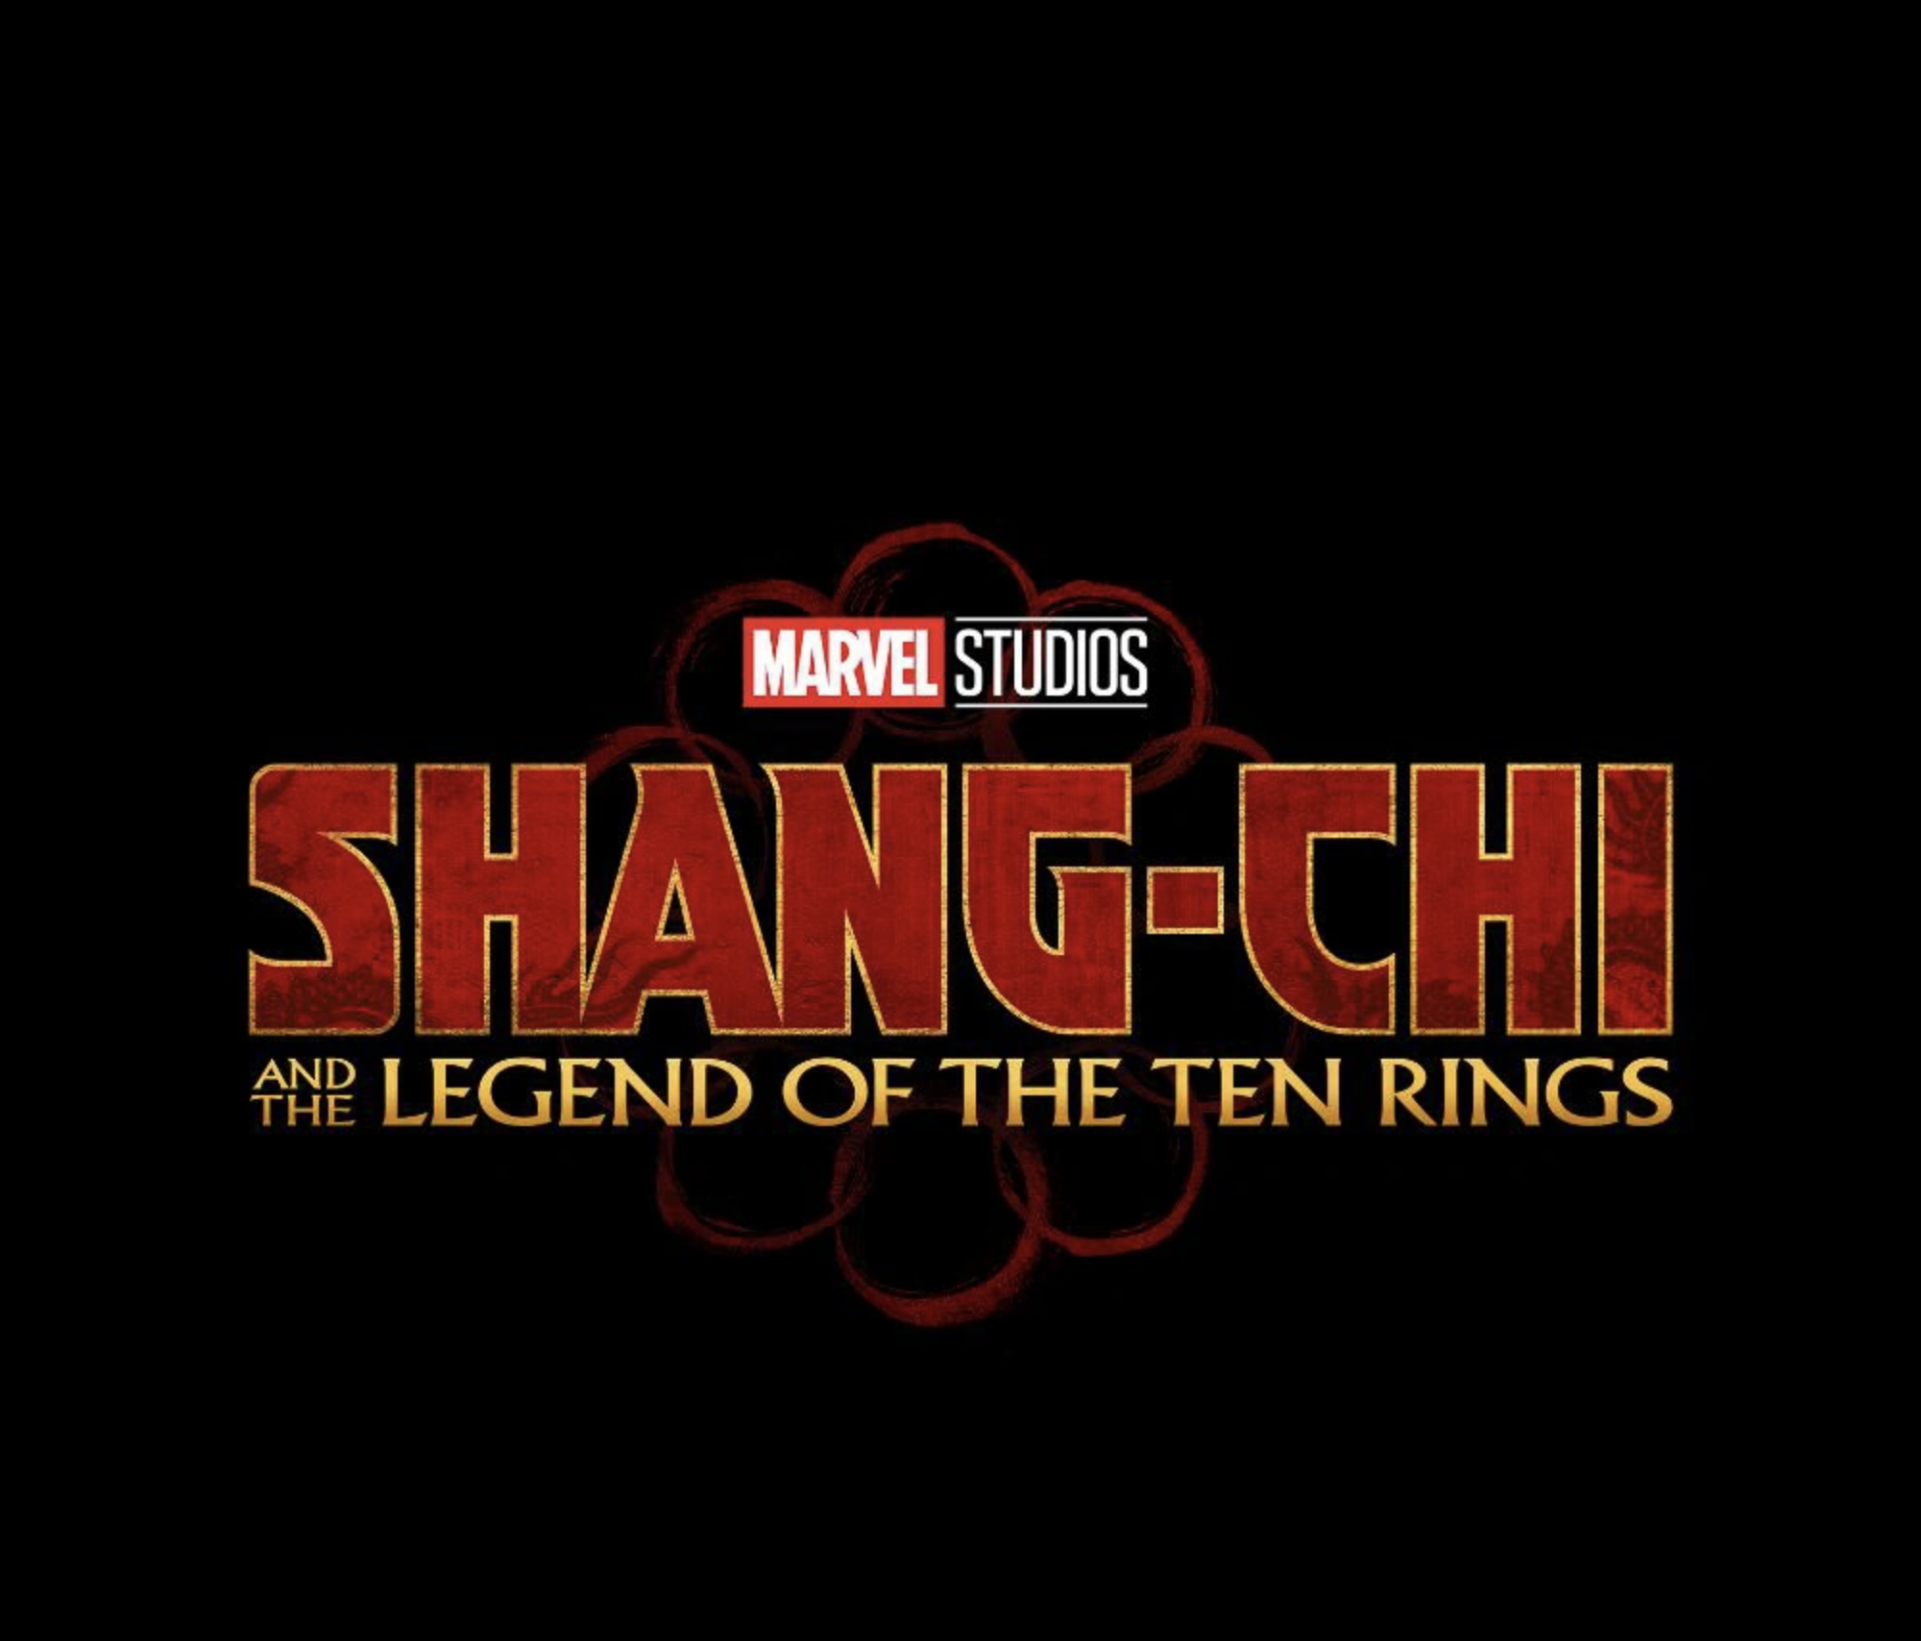 Shang chi subtitle